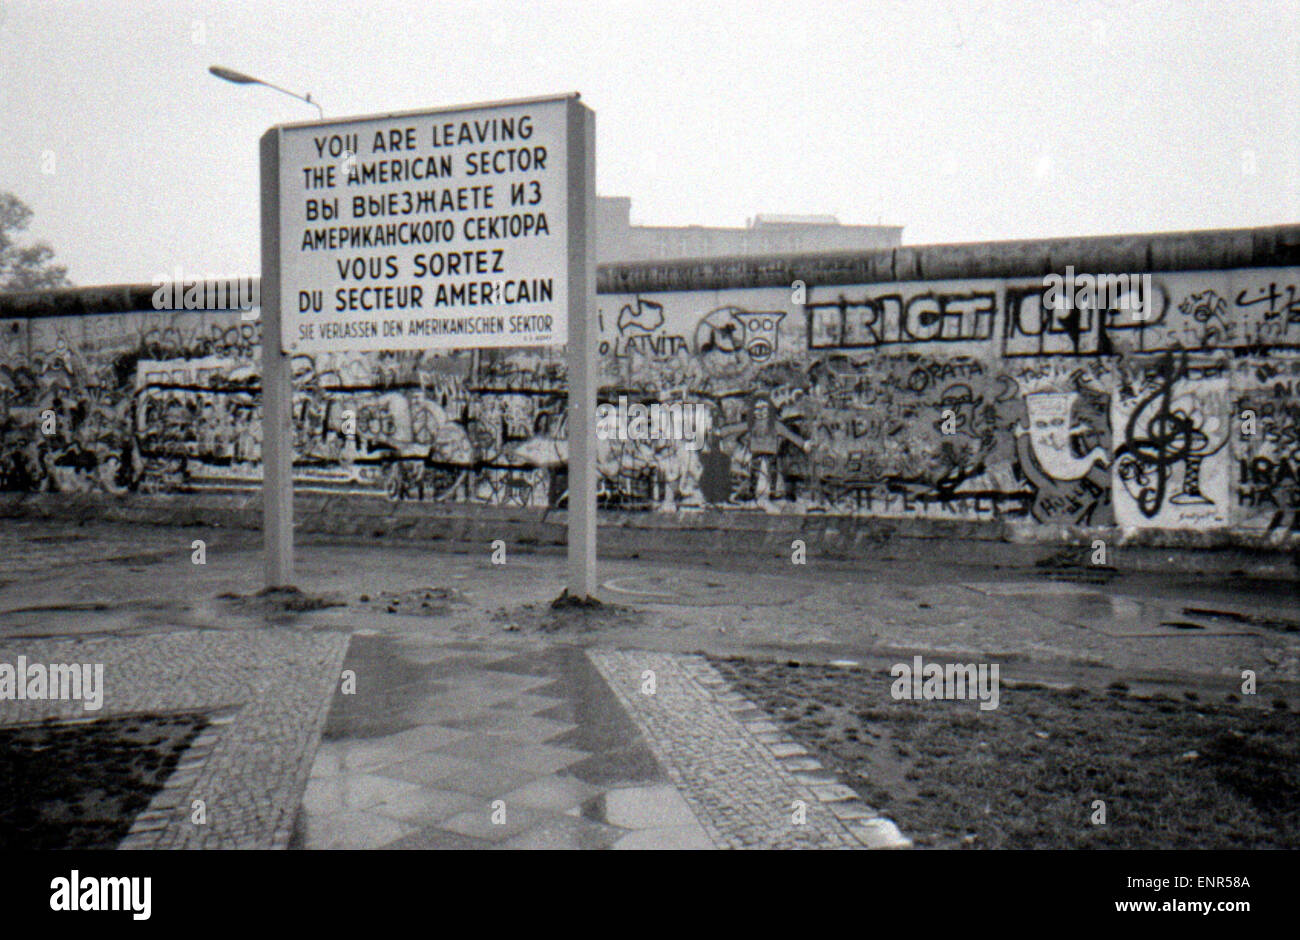 OCTOBER 1988 - BERLIN: the Berlin Wall (Berliner Mauer) in the Tiergarten district of Berlin. Stock Photo